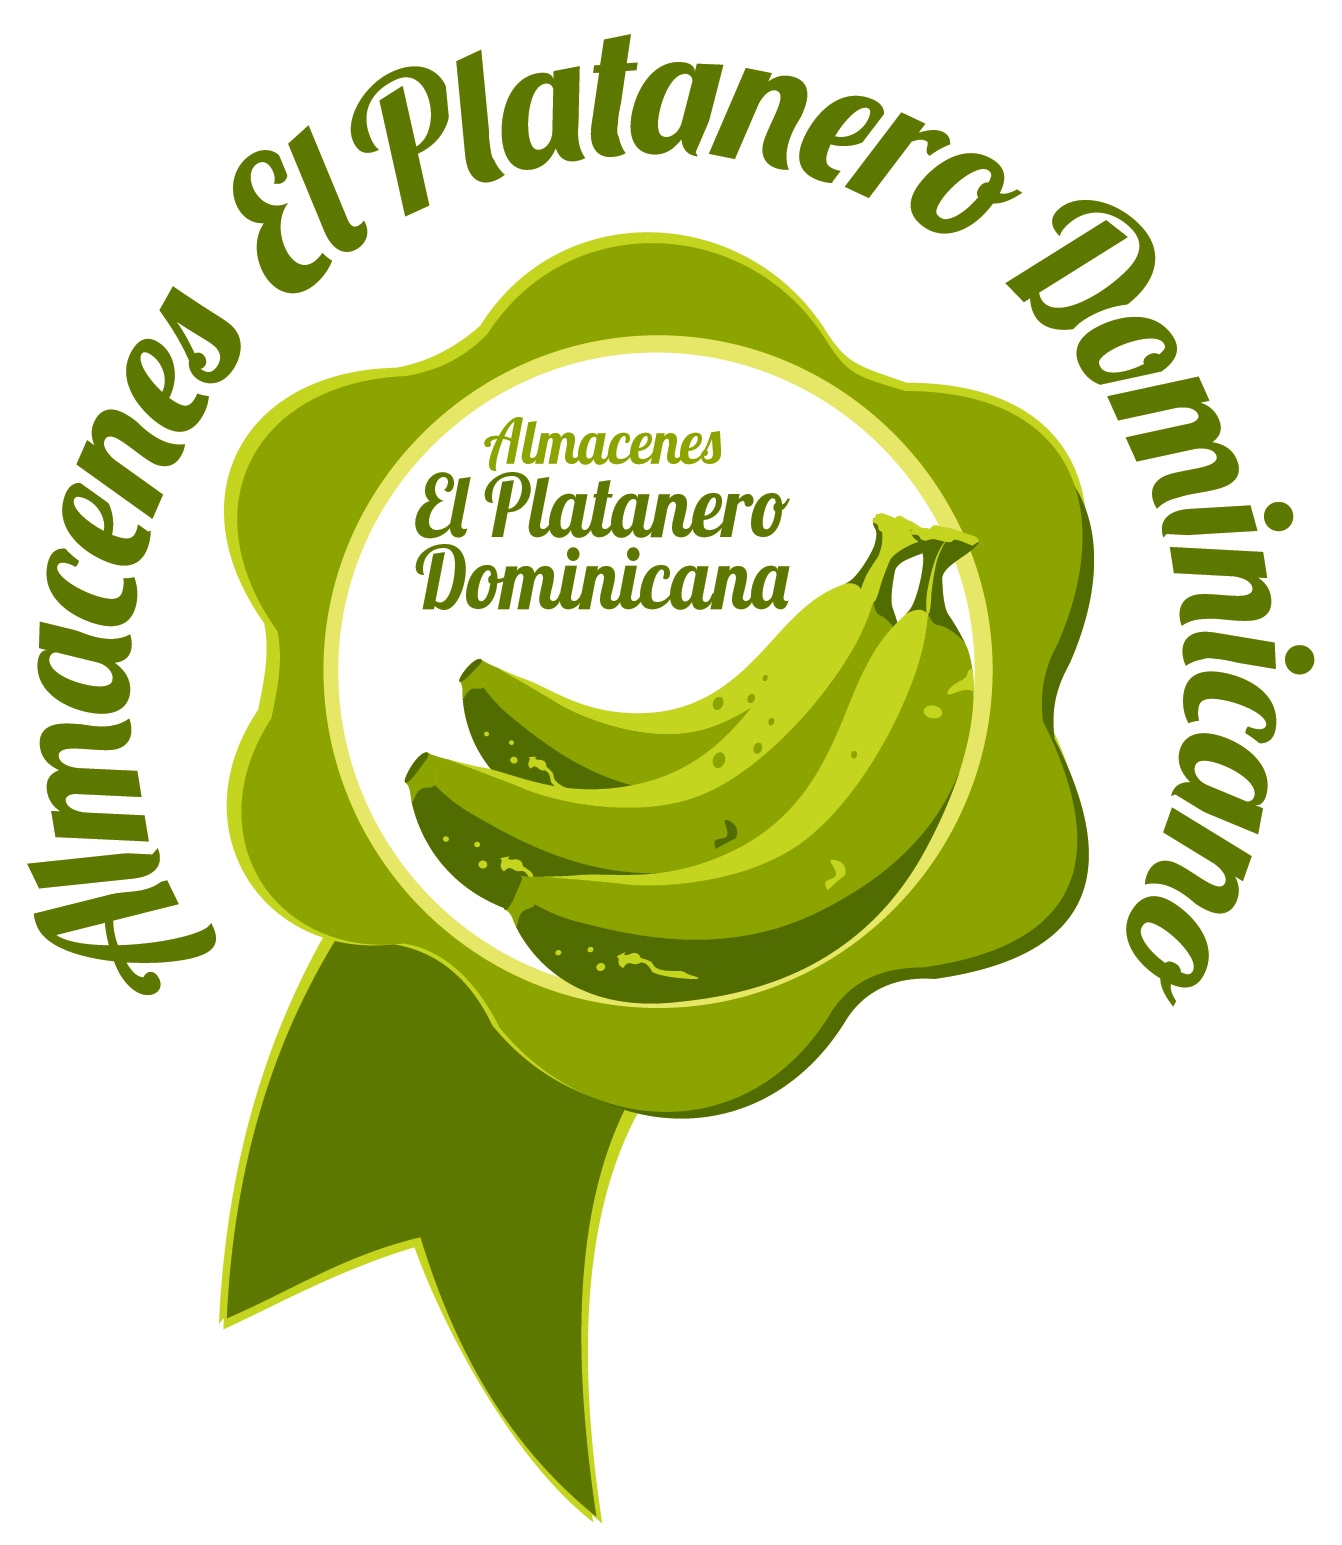 Logo - Logo Almacenes El Platanero Dominicano etiquetas.jpg